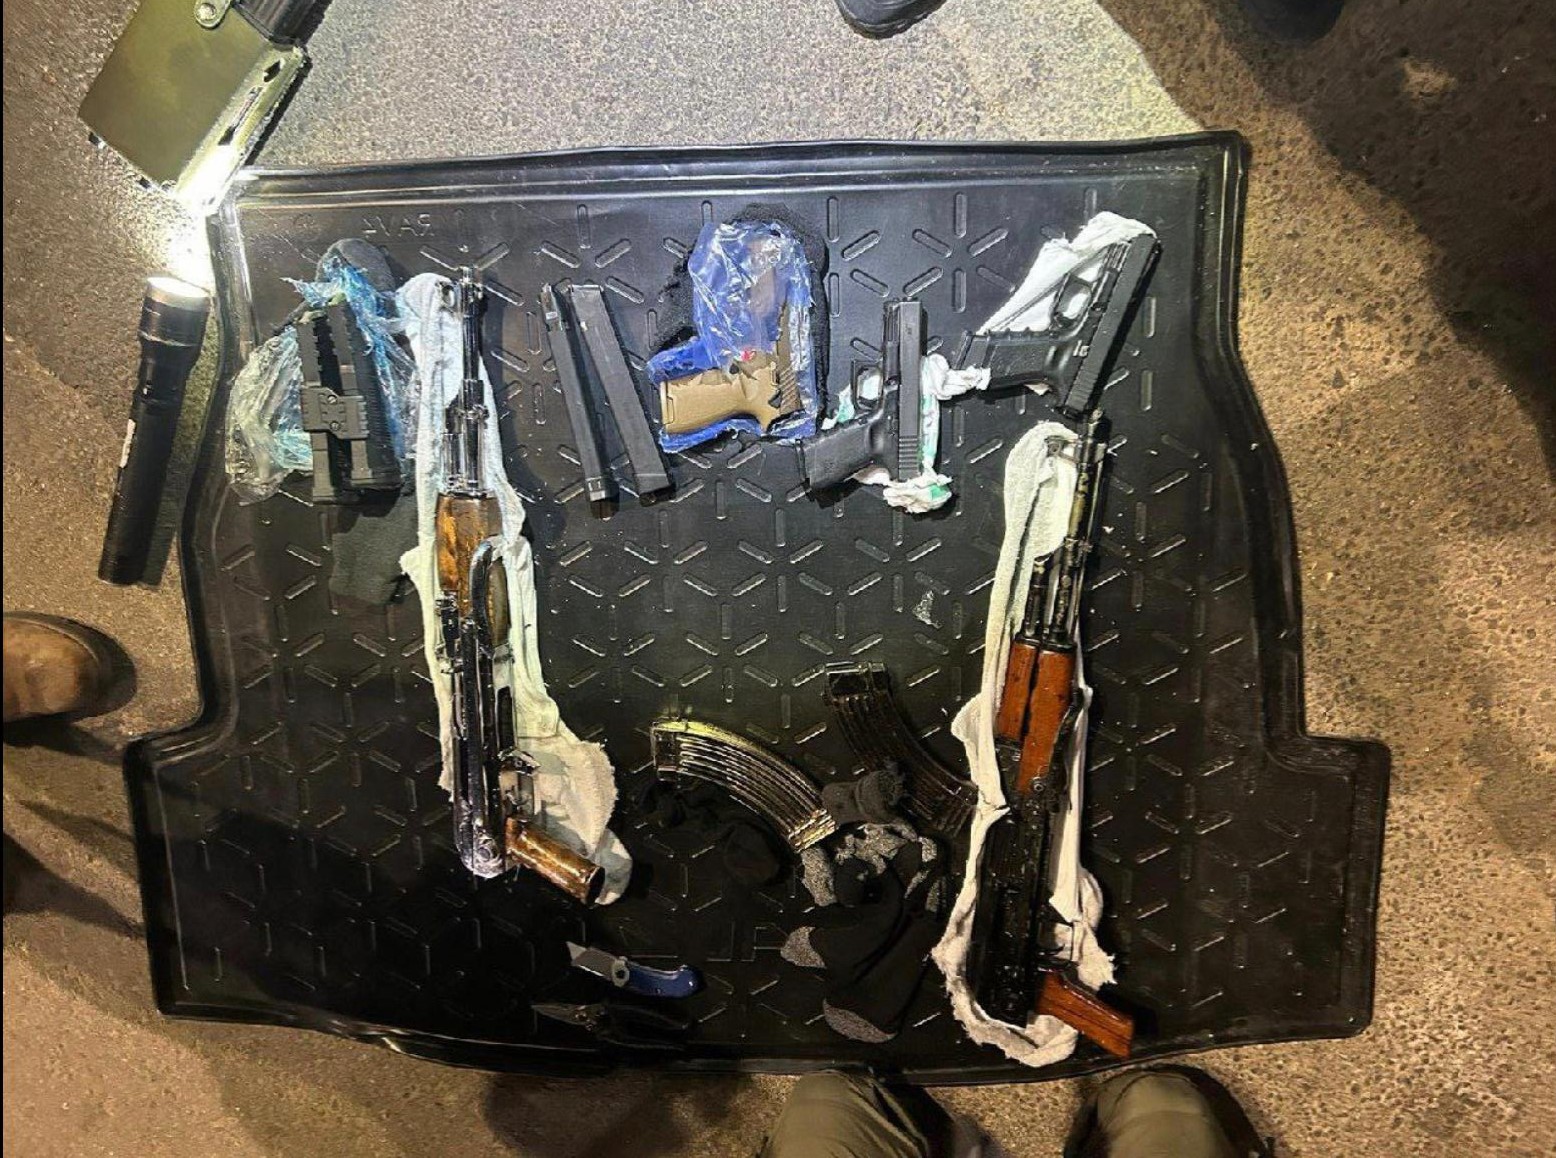  الرملة: ضبط أسلحة وذخيرة داخل مركبة واعتقال مشتبهين  